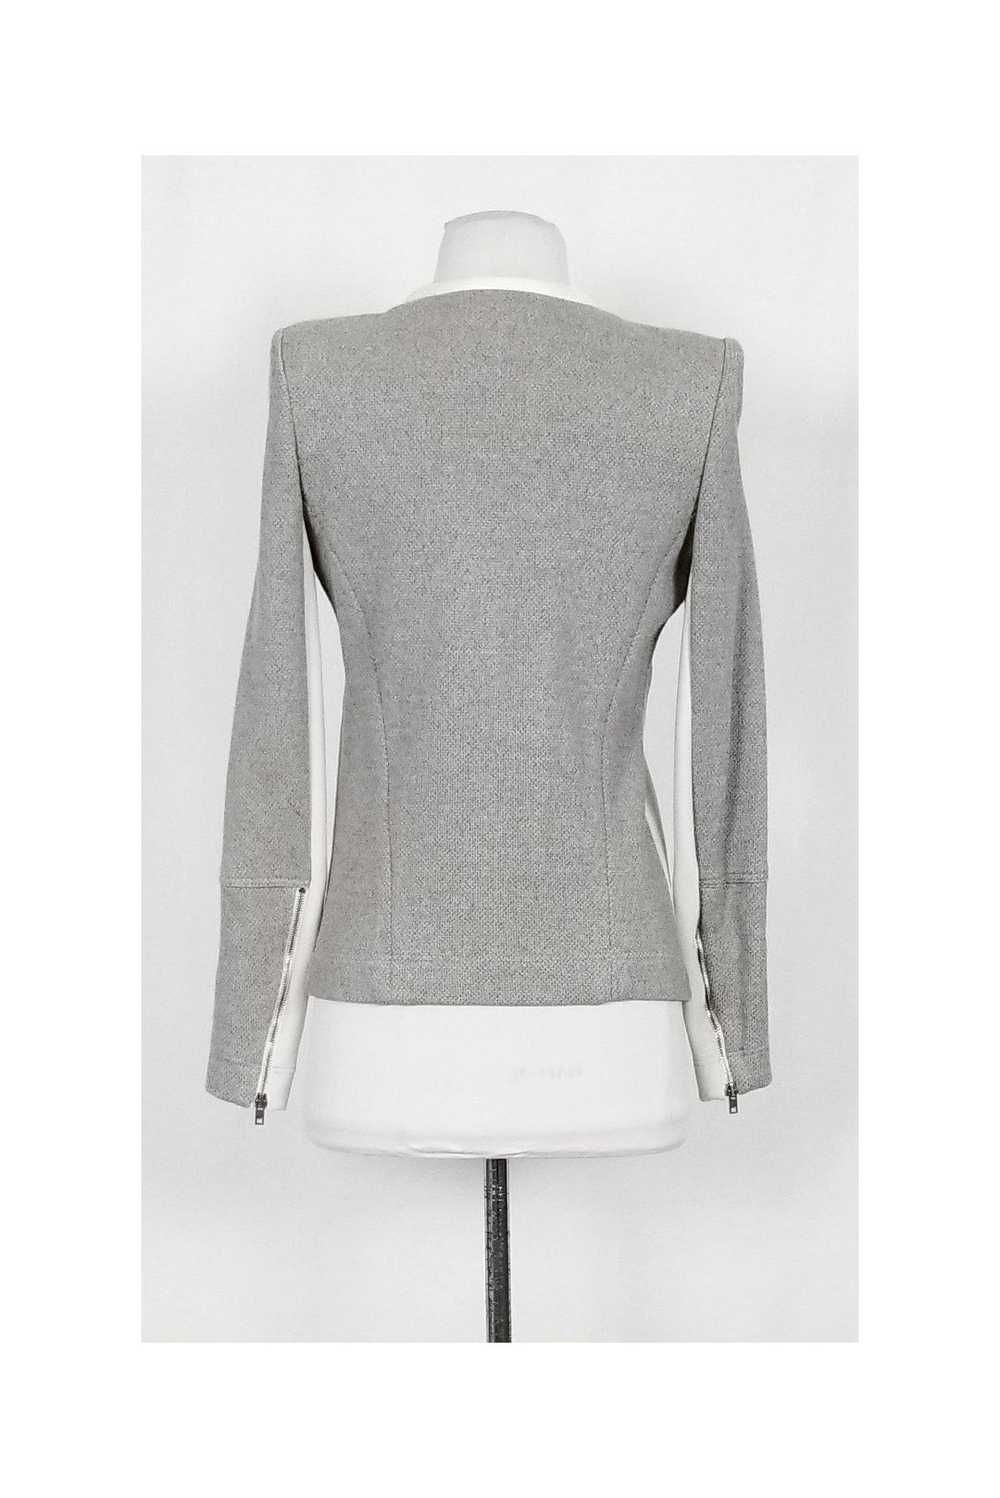 IRO - Grey Knit Jacket w/ Cream Trim Sz 8 - image 3